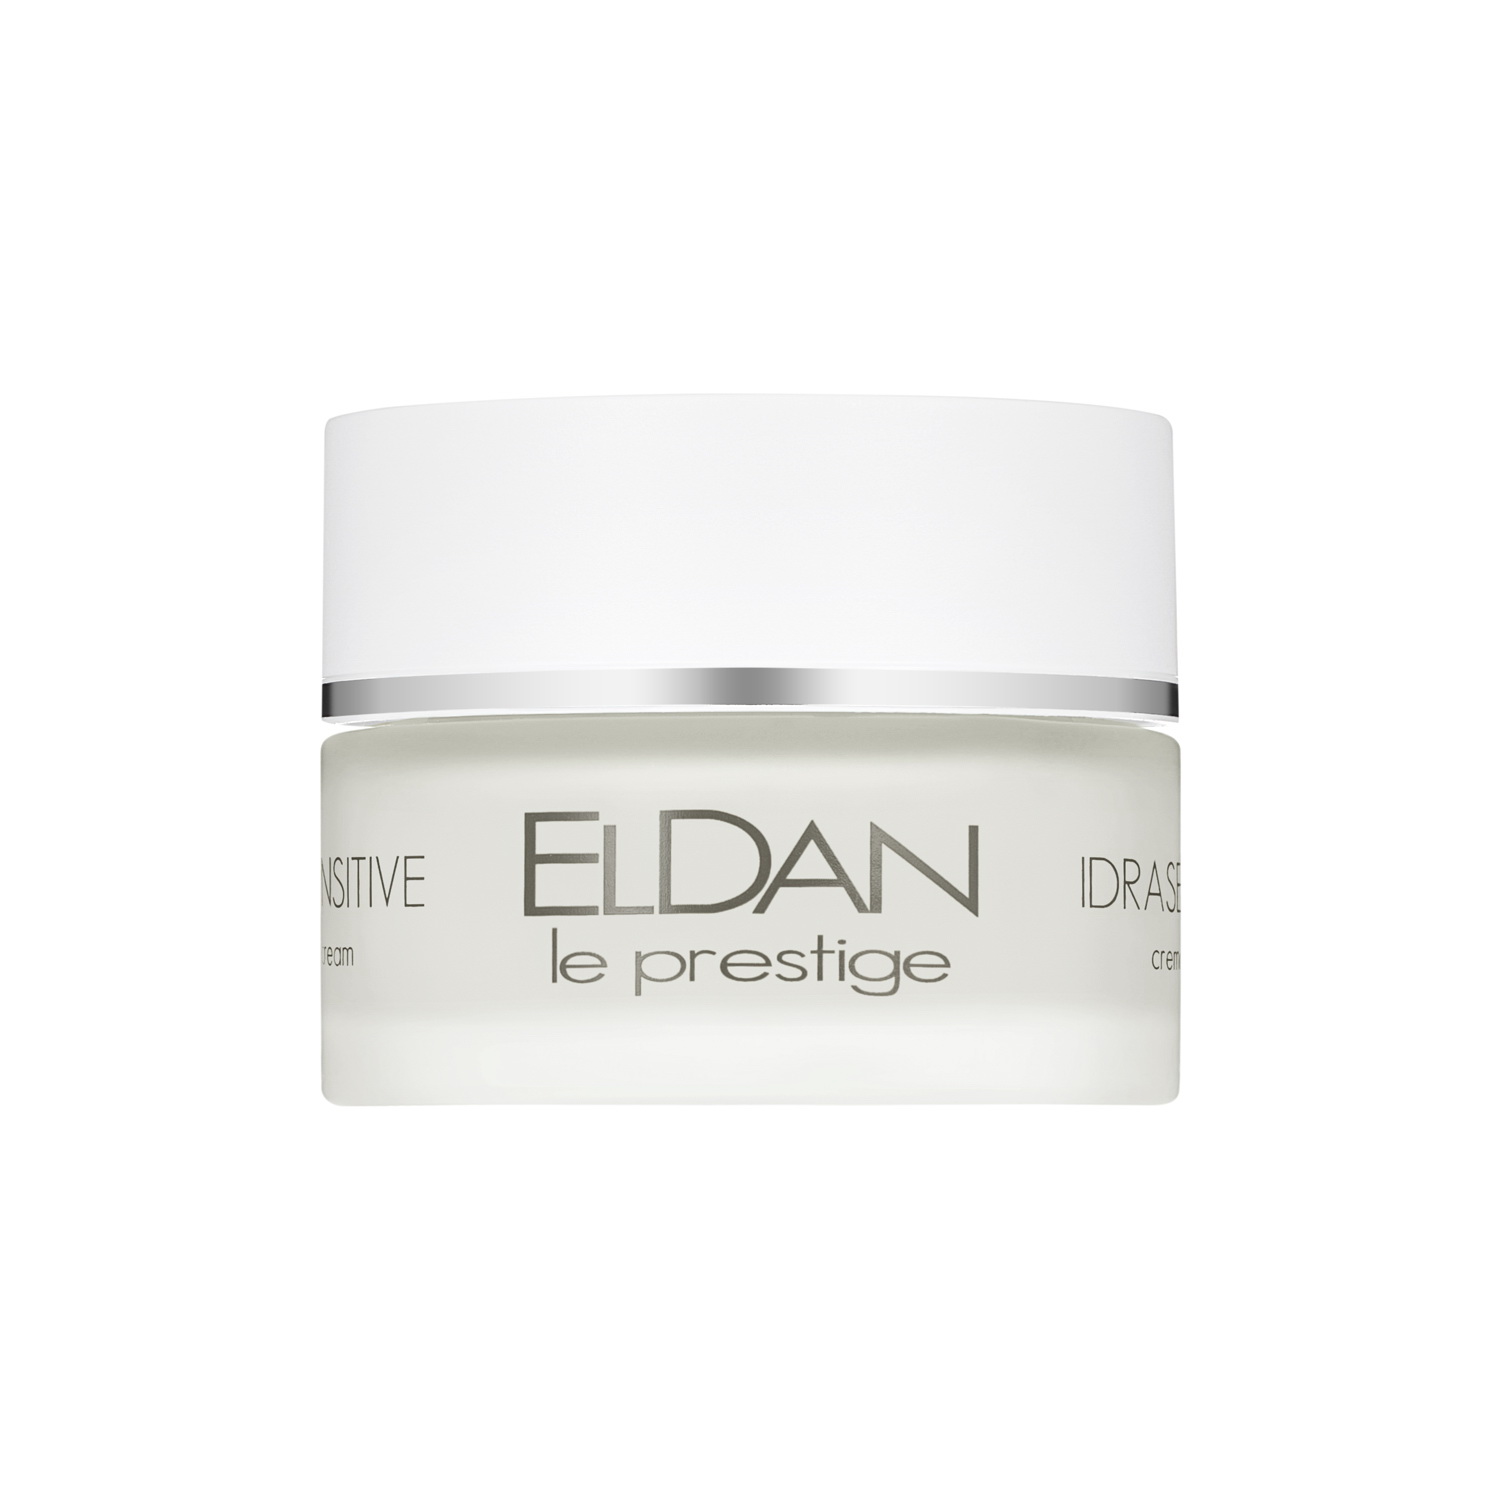 Крем для лица ELDAN Cosmetics Idrasensitive 24H Cream для чувствительной кожи, 50 мл крем для рук весна витаминный главаптека 75 мл 6 штук